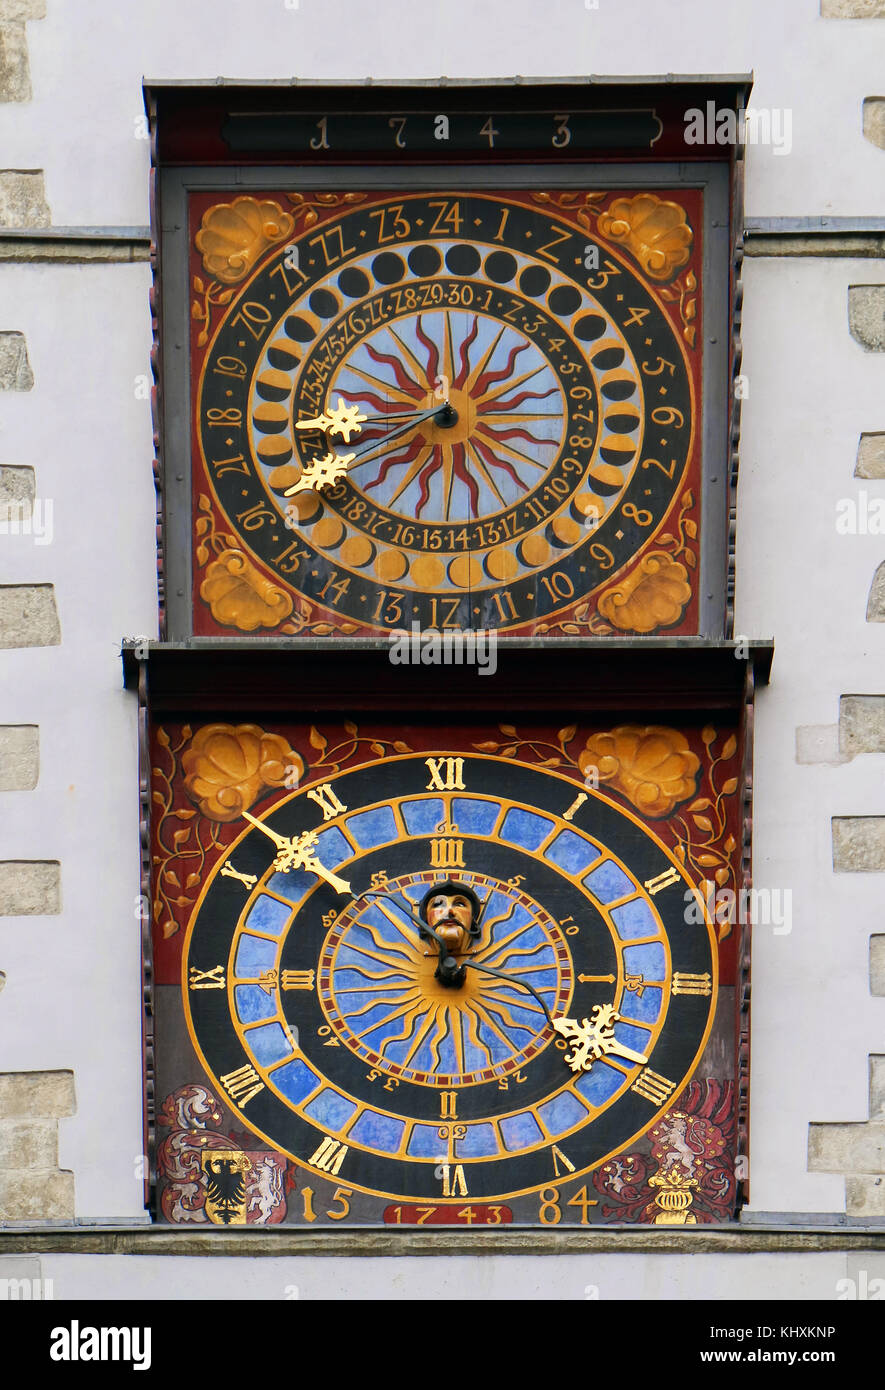 Europa, Deutschland, Sachsen, Görlitz, die Altstadt, die unter Marktplatz, das Rathaus turm, das Rathaus turm; historische mittelalterliche astronomische Uhr Stockfoto